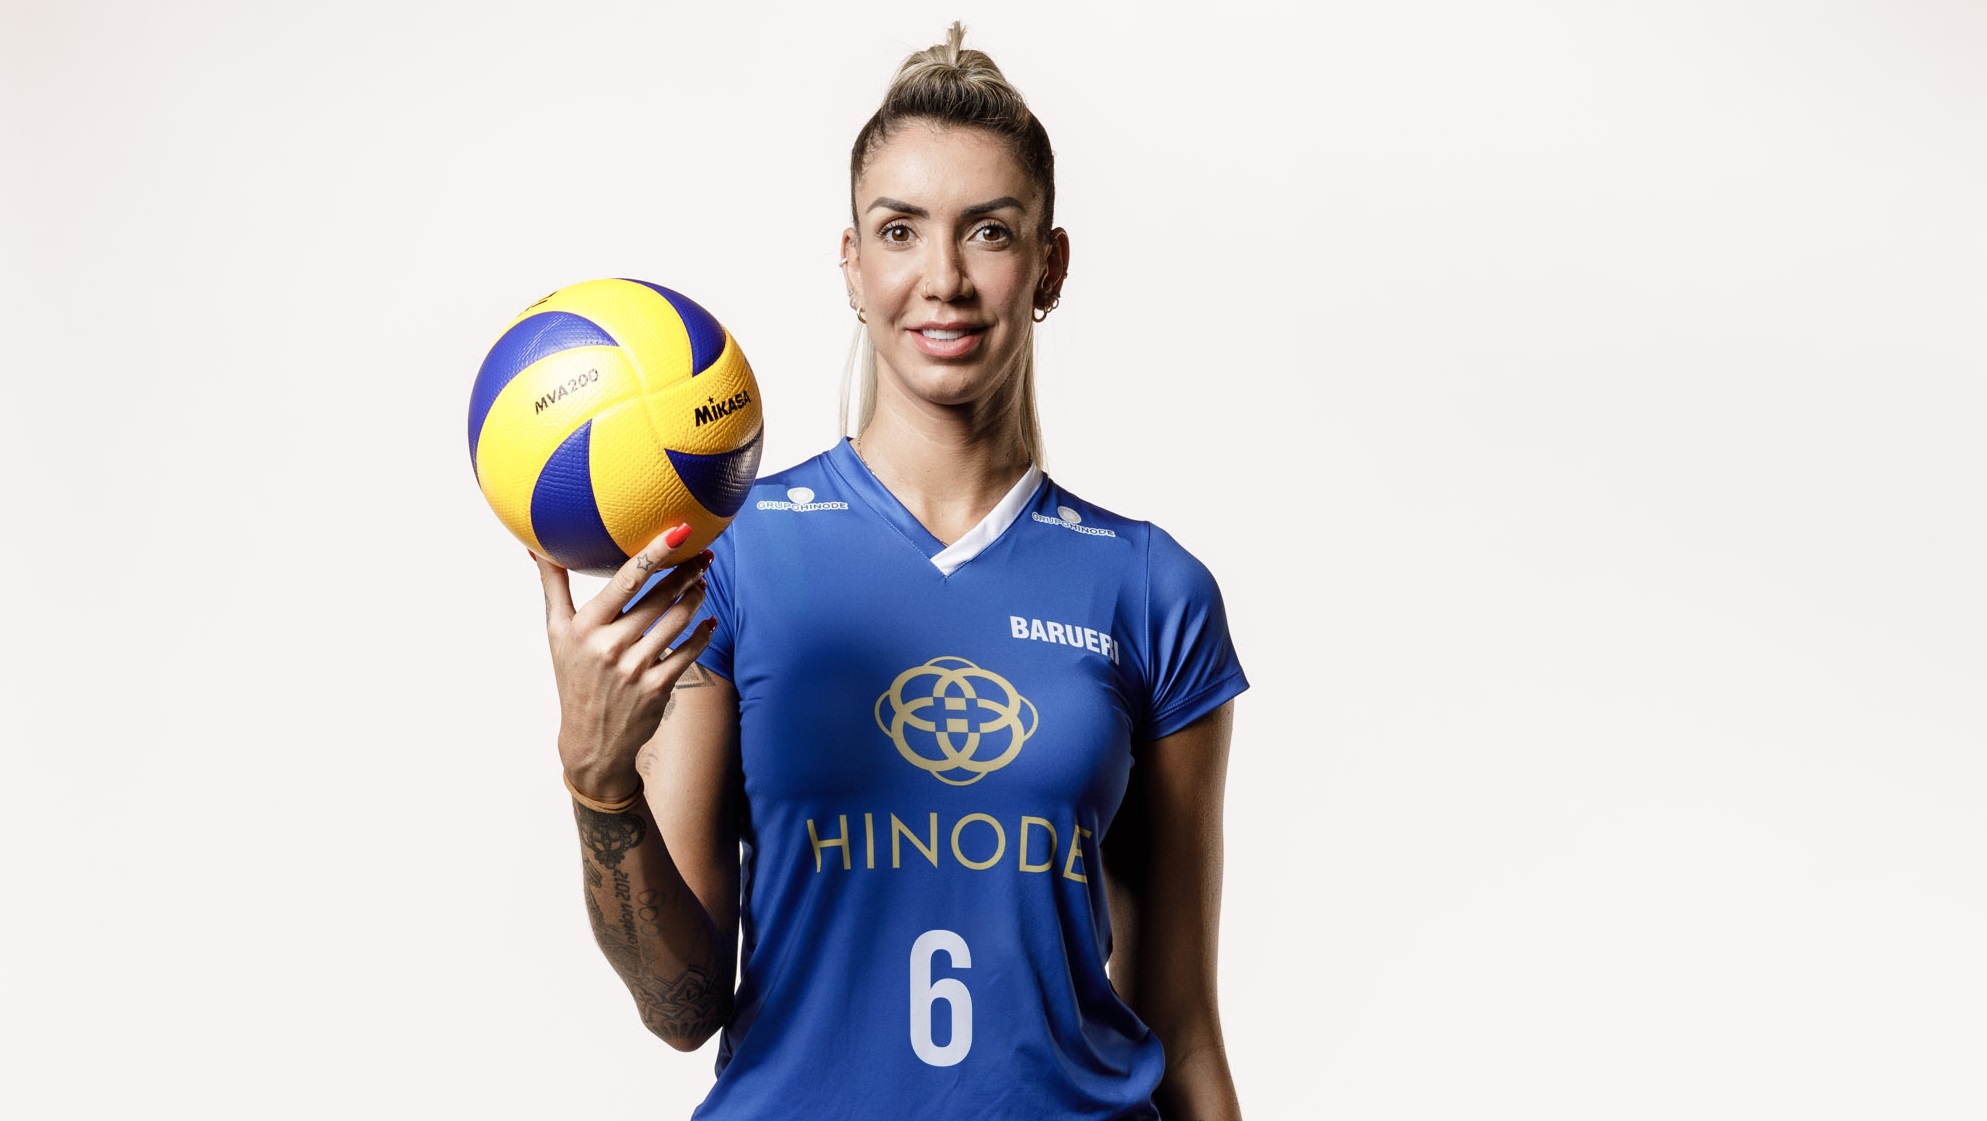 Thaisa confirma volta à Seleção Brasileira de vôlei